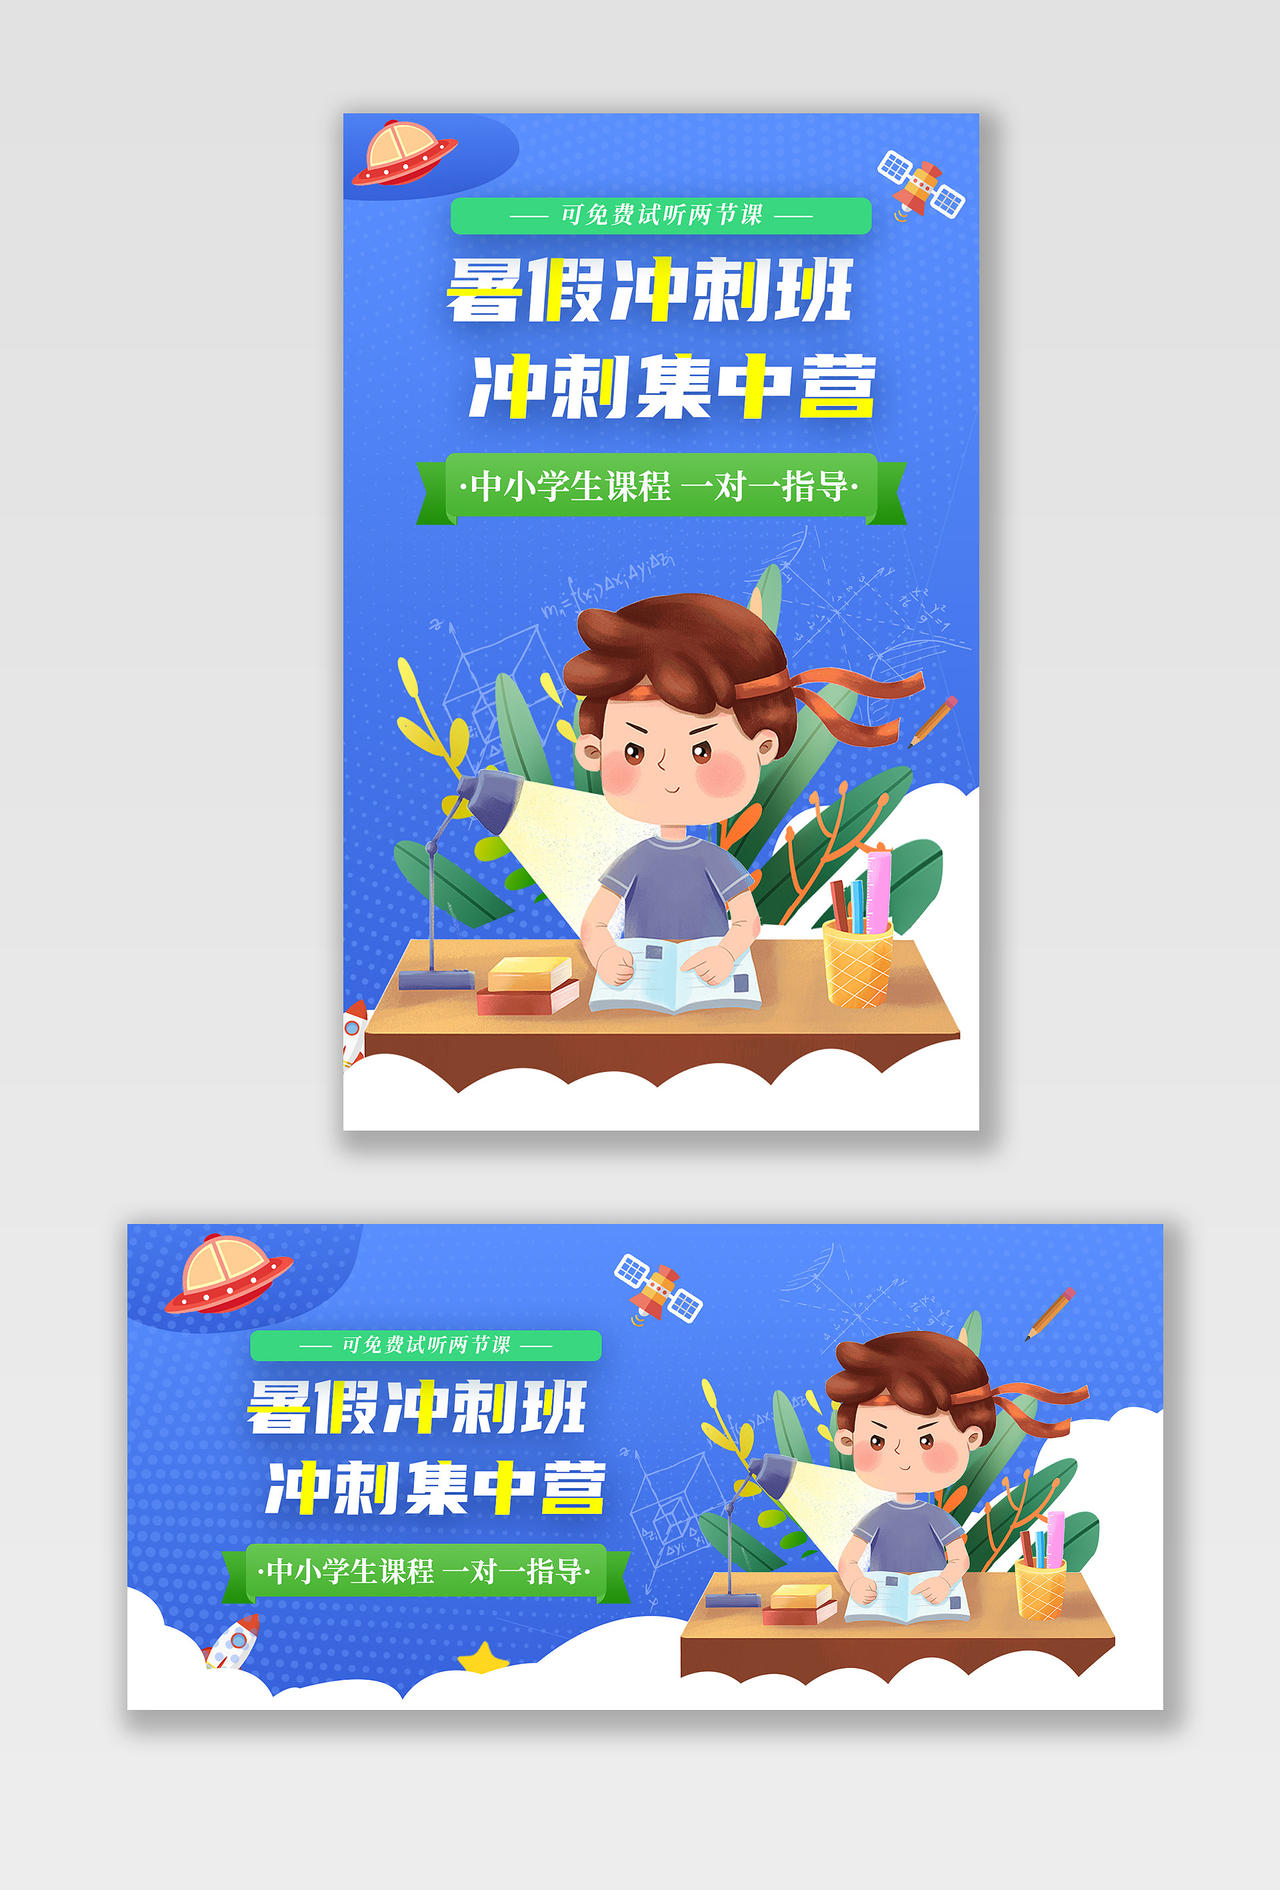 电商蓝色淘宝天猫暑假冲刺班教育暑假班教育培训海报banner